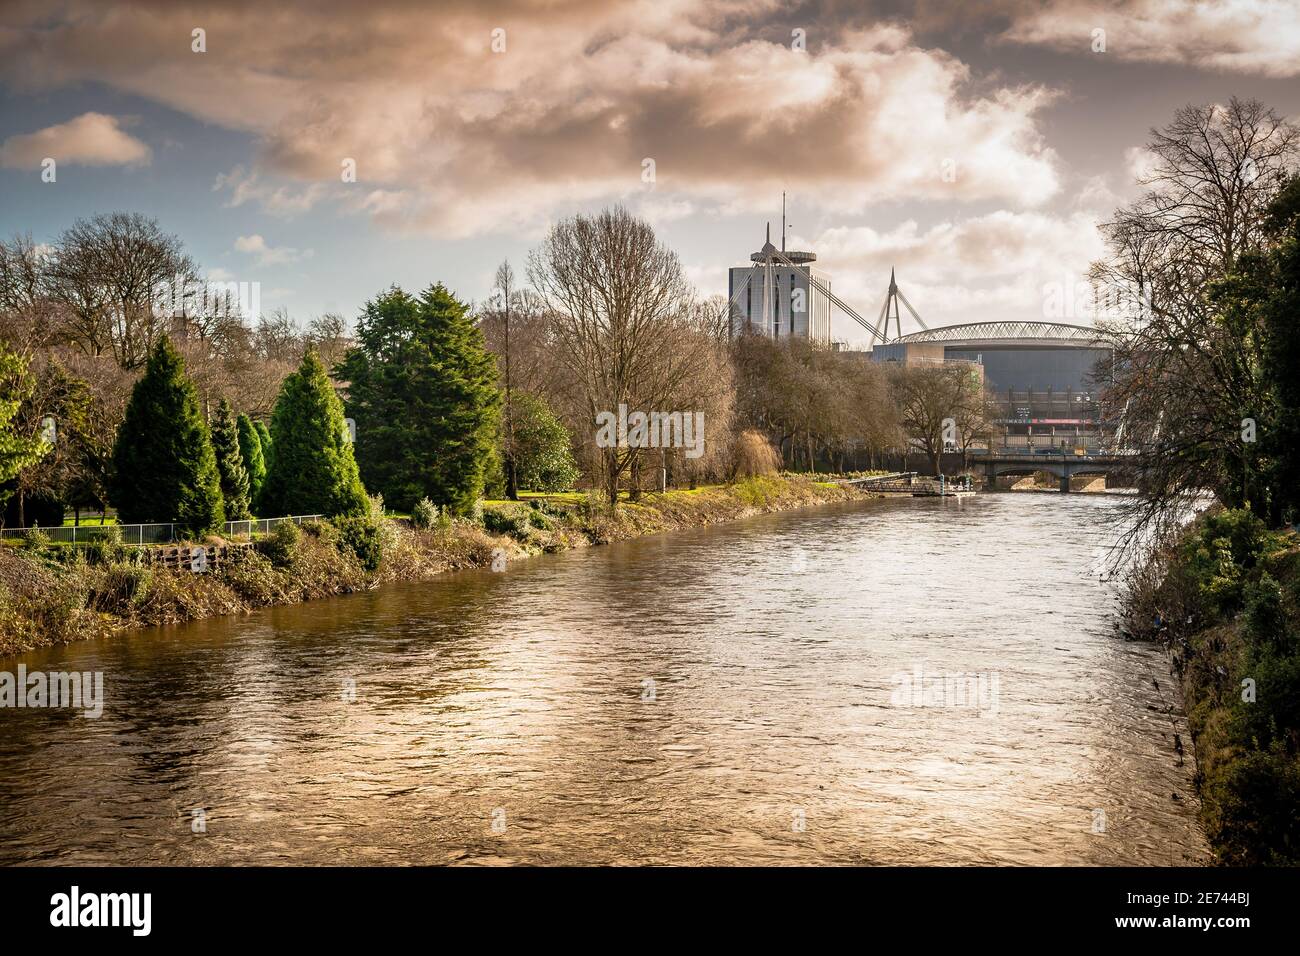 Una tempesta che infesta sul fiume Taf nel Bute Park, Cardiff, con lo stadio Millenium visibile in lontananza. Foto Stock